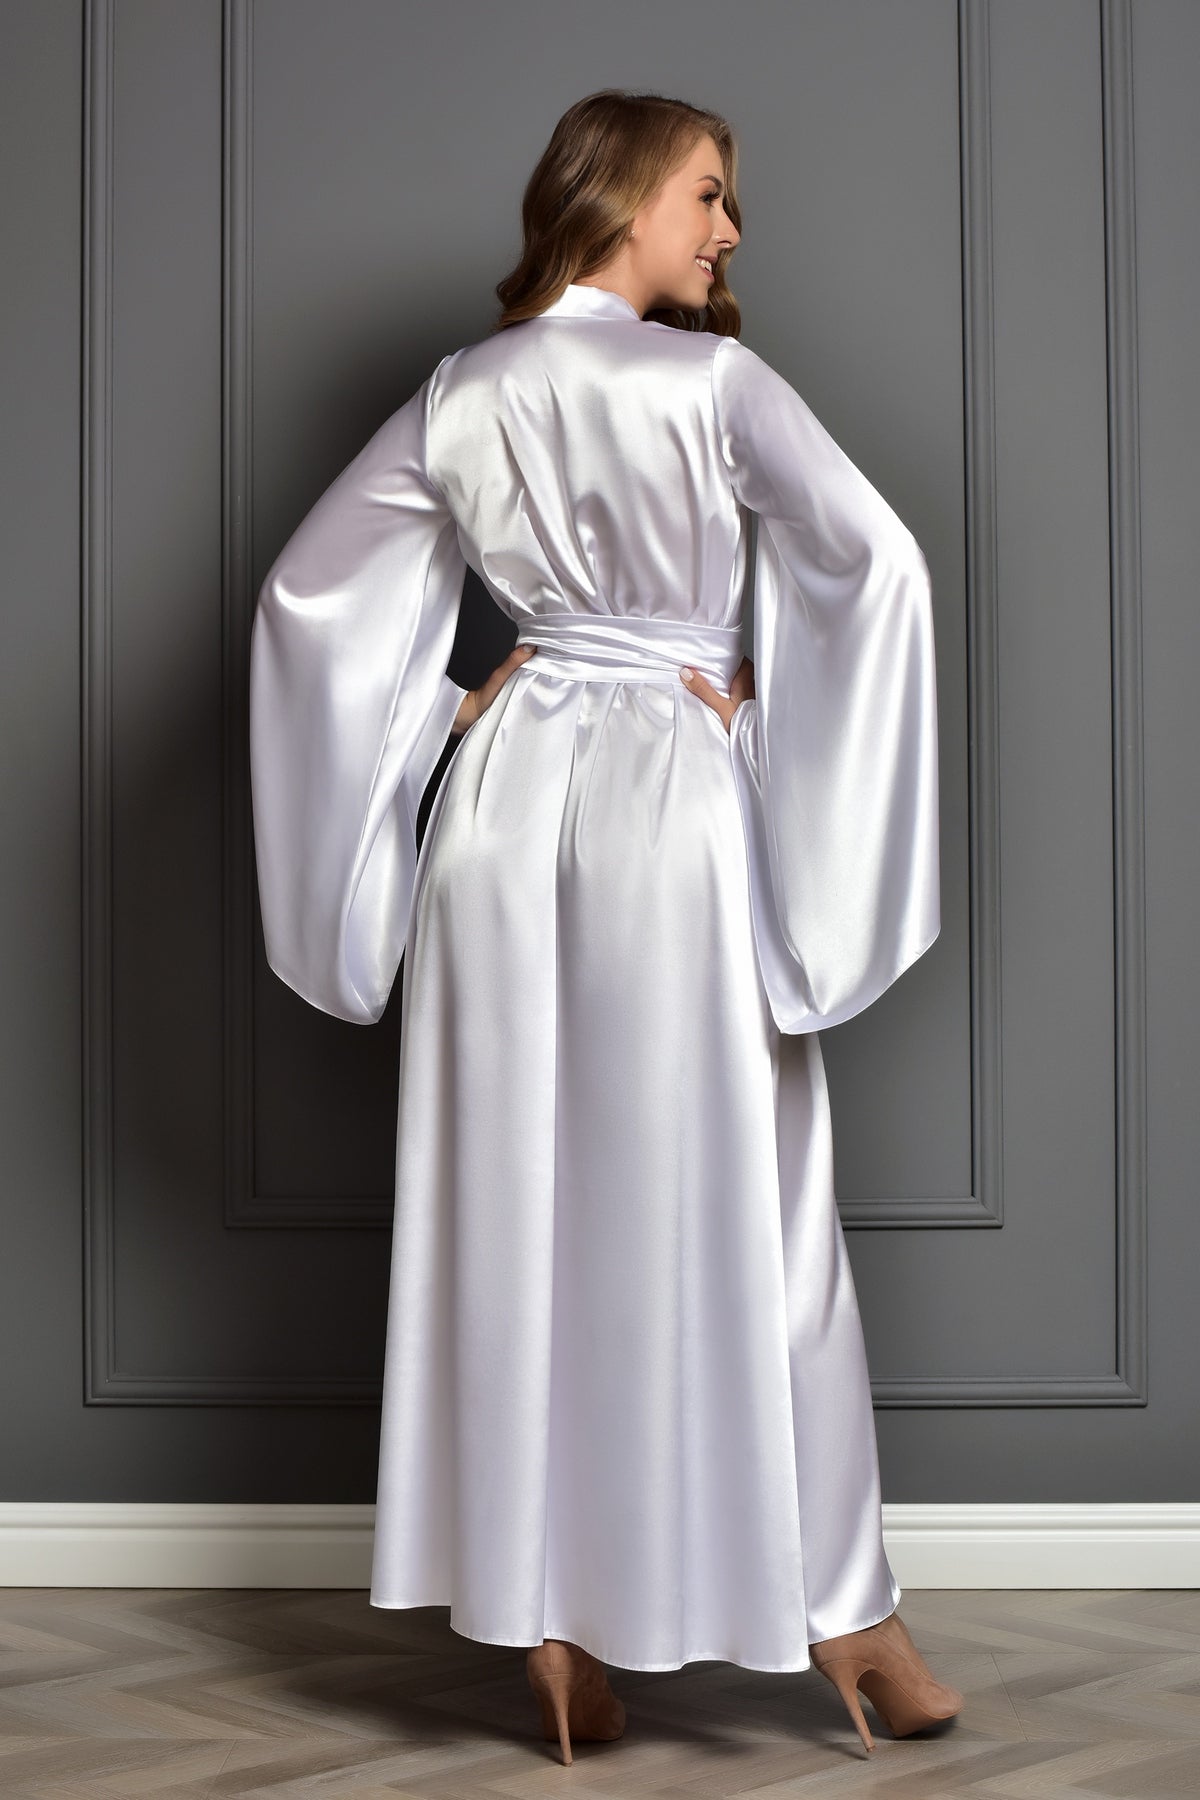 White dressing gown - Bride kimono